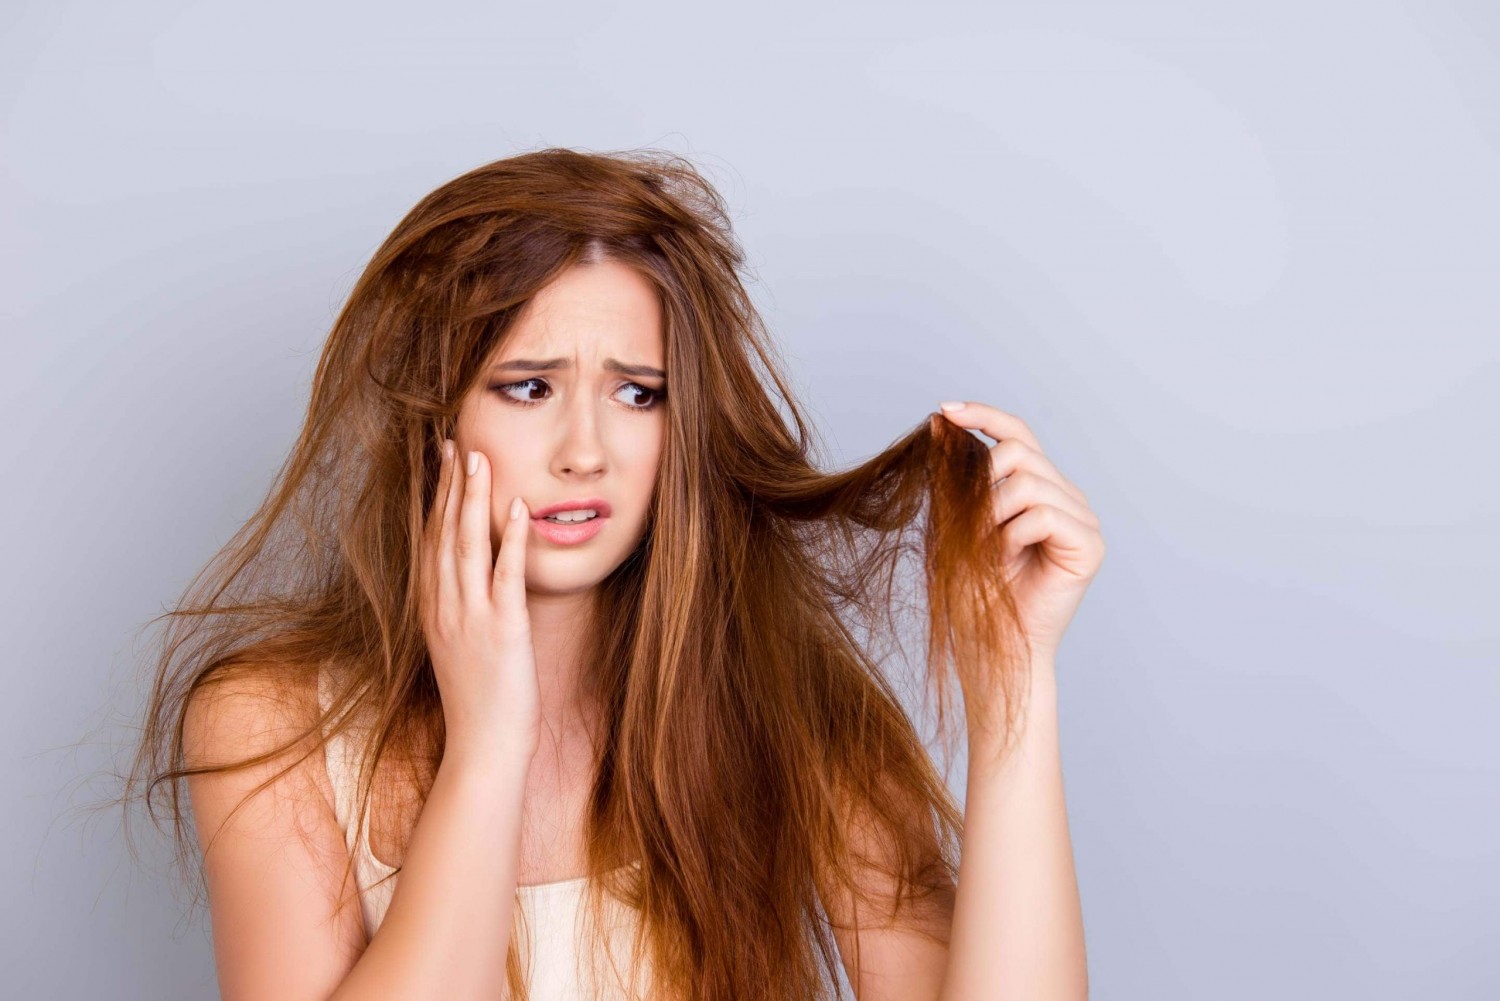 Mái tóc nhuộm thường gặp các vấn đề về tóc xơ rối, phai màu khi gội đầu